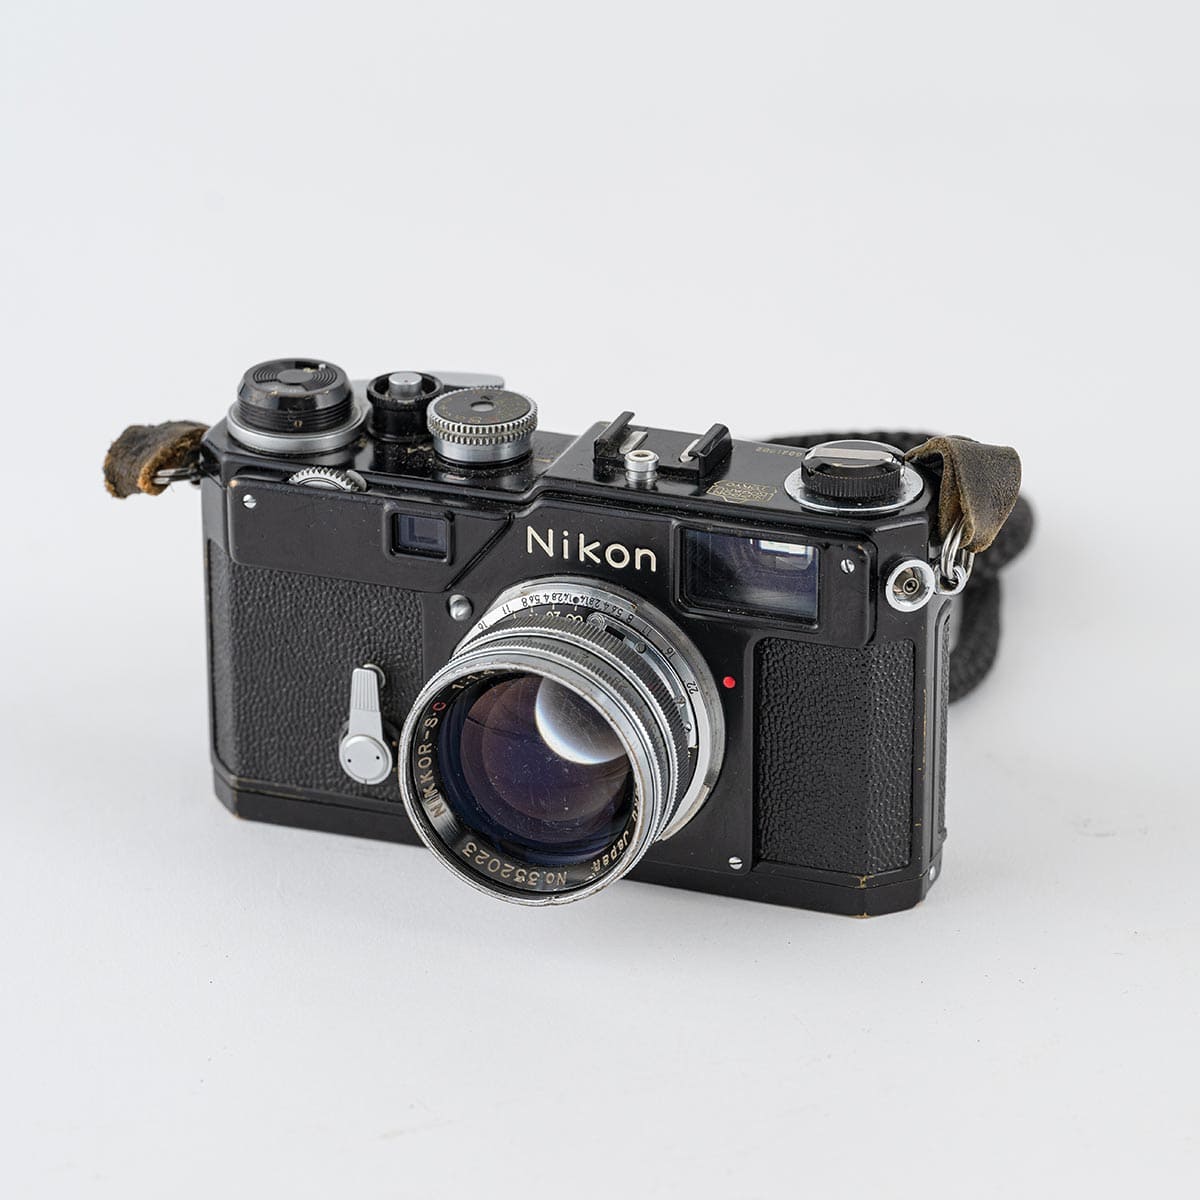 佐藤明さんから形見分けでもらったカメラ「Nikon S３」。